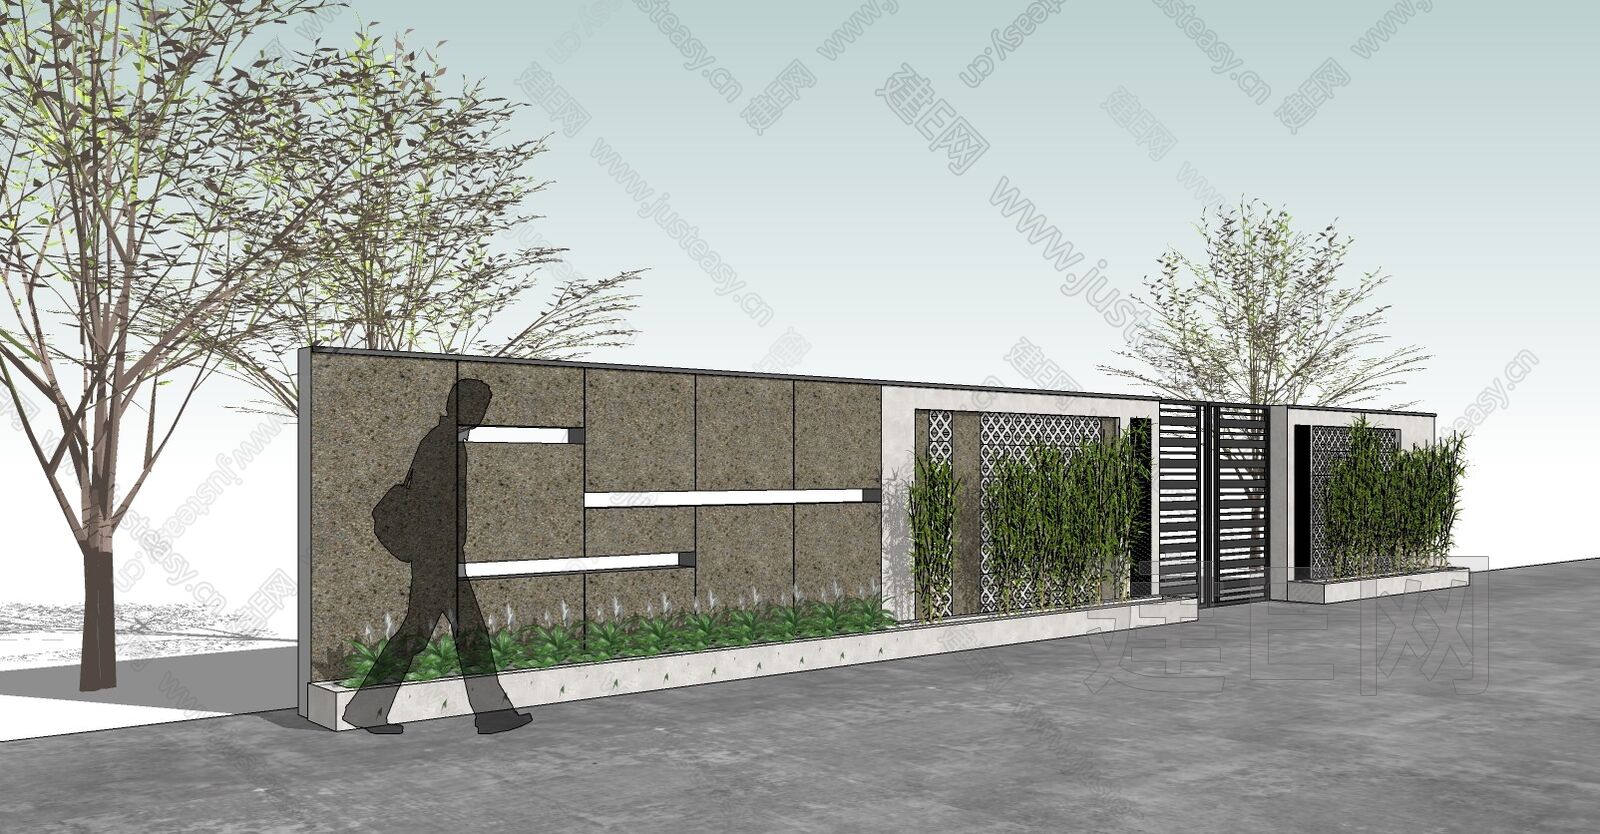 厦门·龙湖嘉屿城·围墙设计 室外设计/景观围墙设计-LWYI